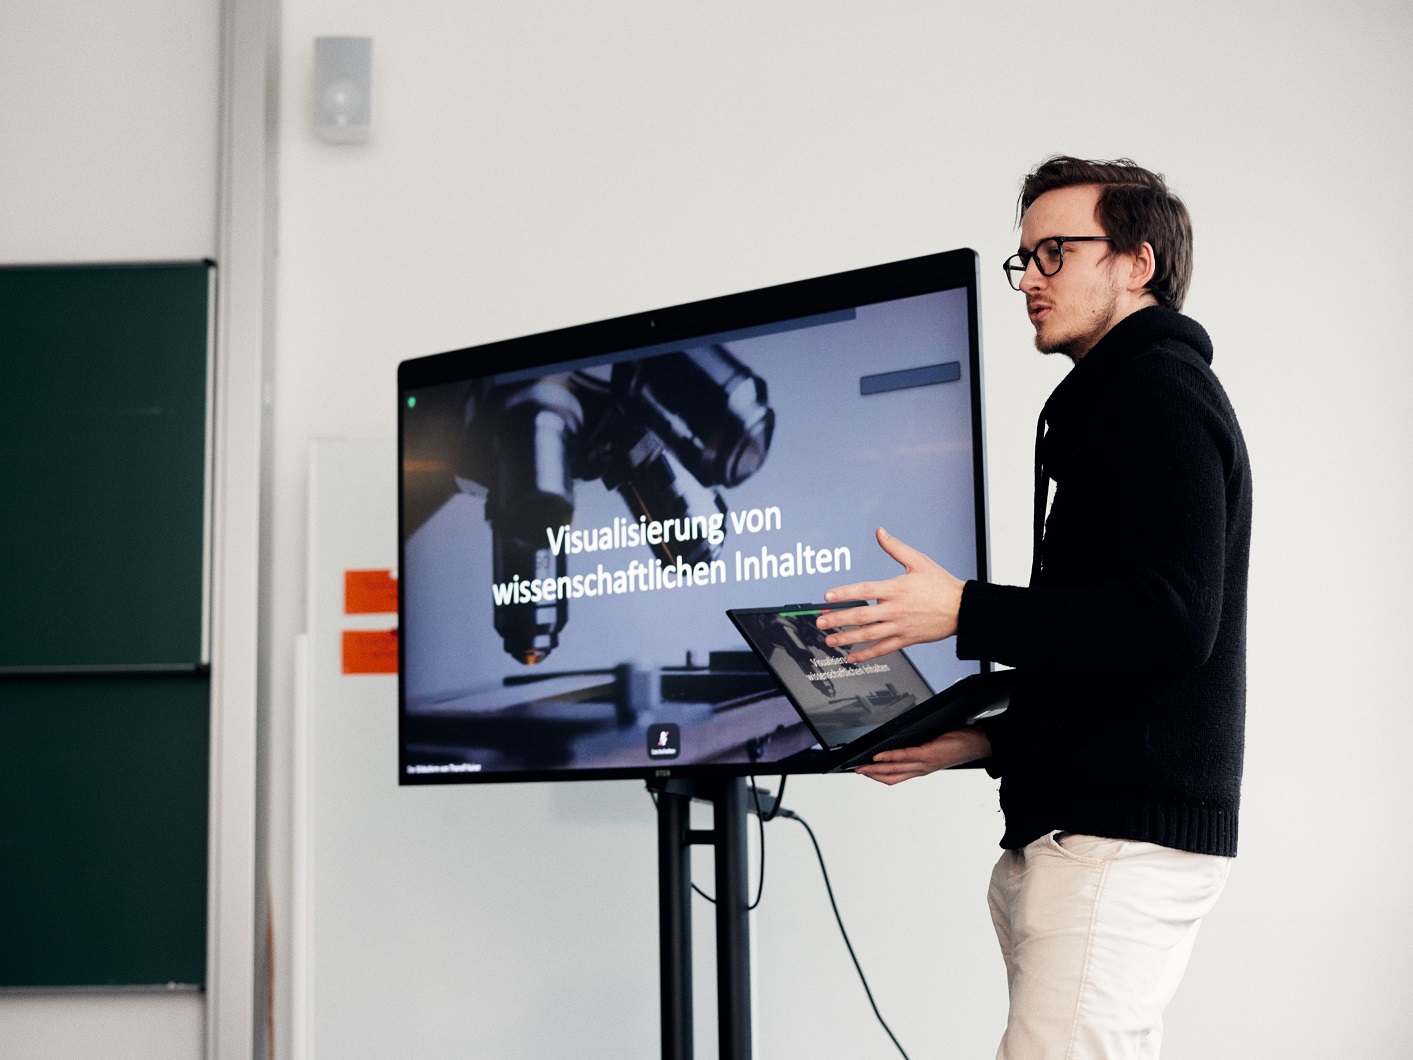 Ein Mann hlt einen Laptop und stellt eine PowerPoint-Prsentation vor, die neben ihm auf einem groen Bildschirm angezeigt wird